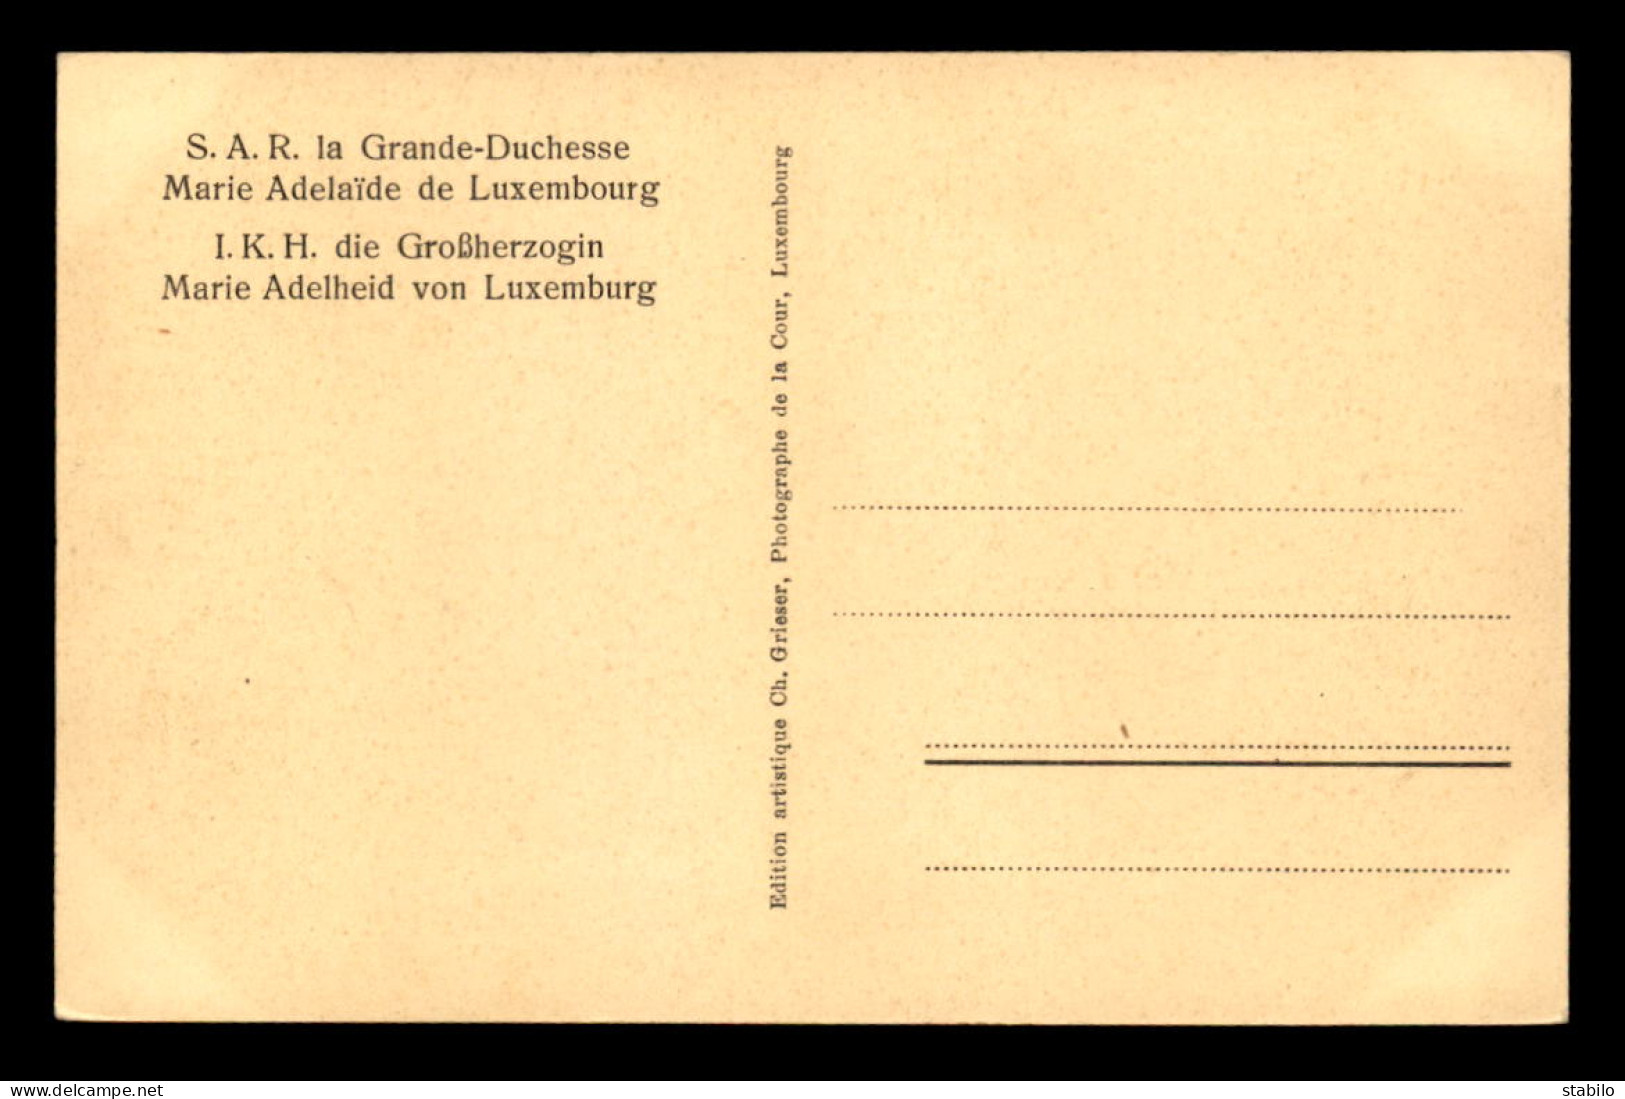 LUXEMBOURG - S.A.R. LA GRANDE DUCHESSE MARIE-ADELAIDE DE LUXEMBOURG - Grossherzogliche Familie